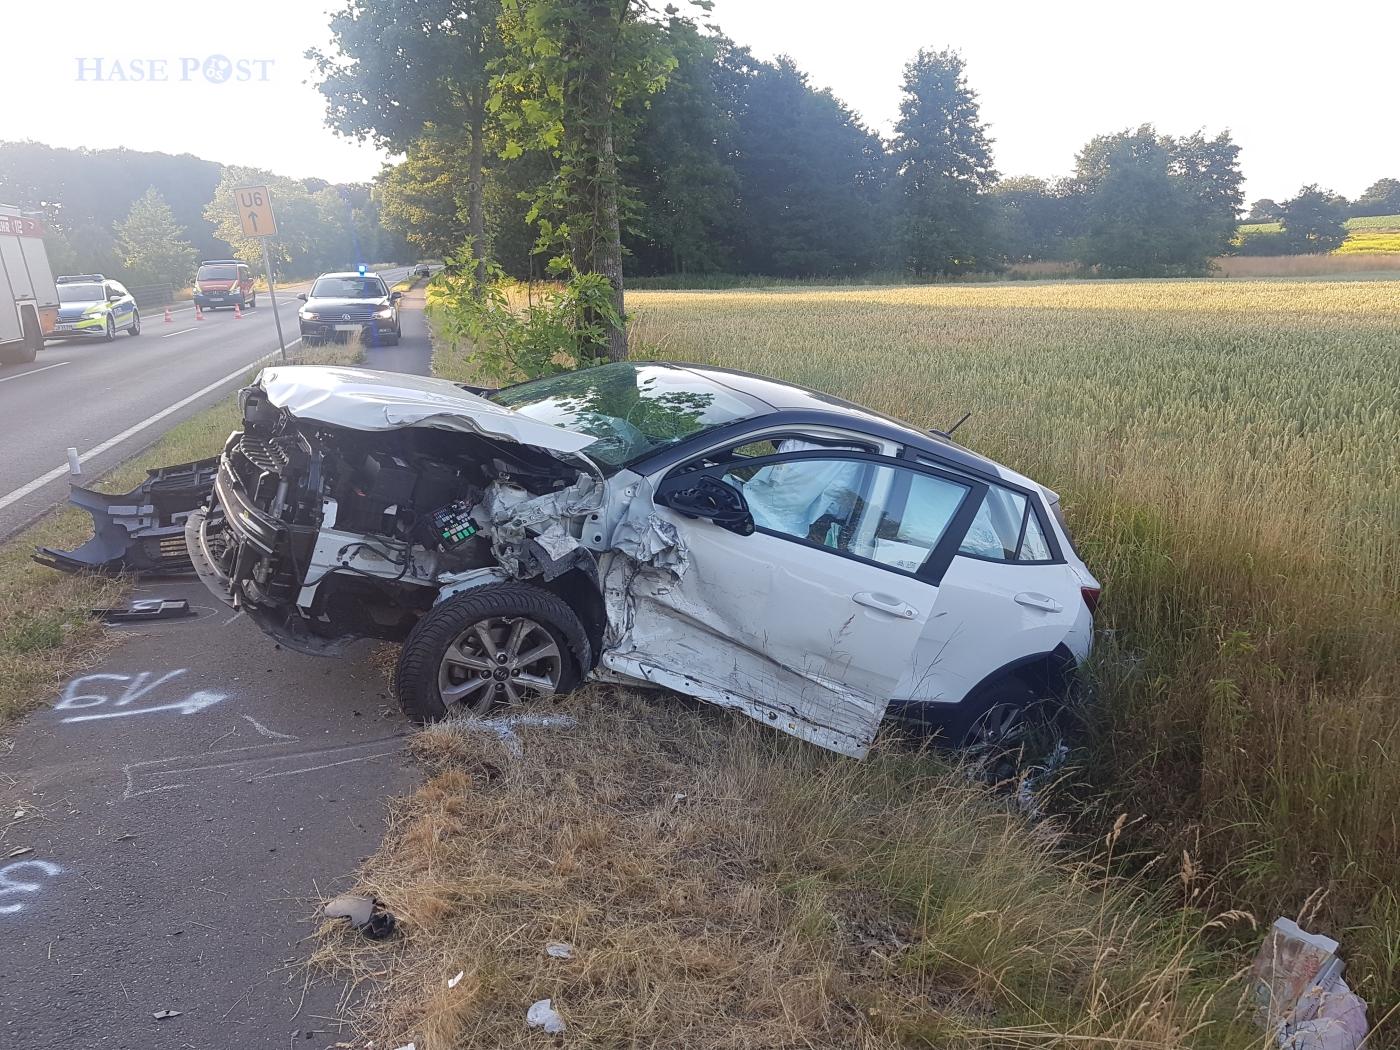 Auto gerät in Gegenverkehr: Tödlicher Unfall in Bersenbrück